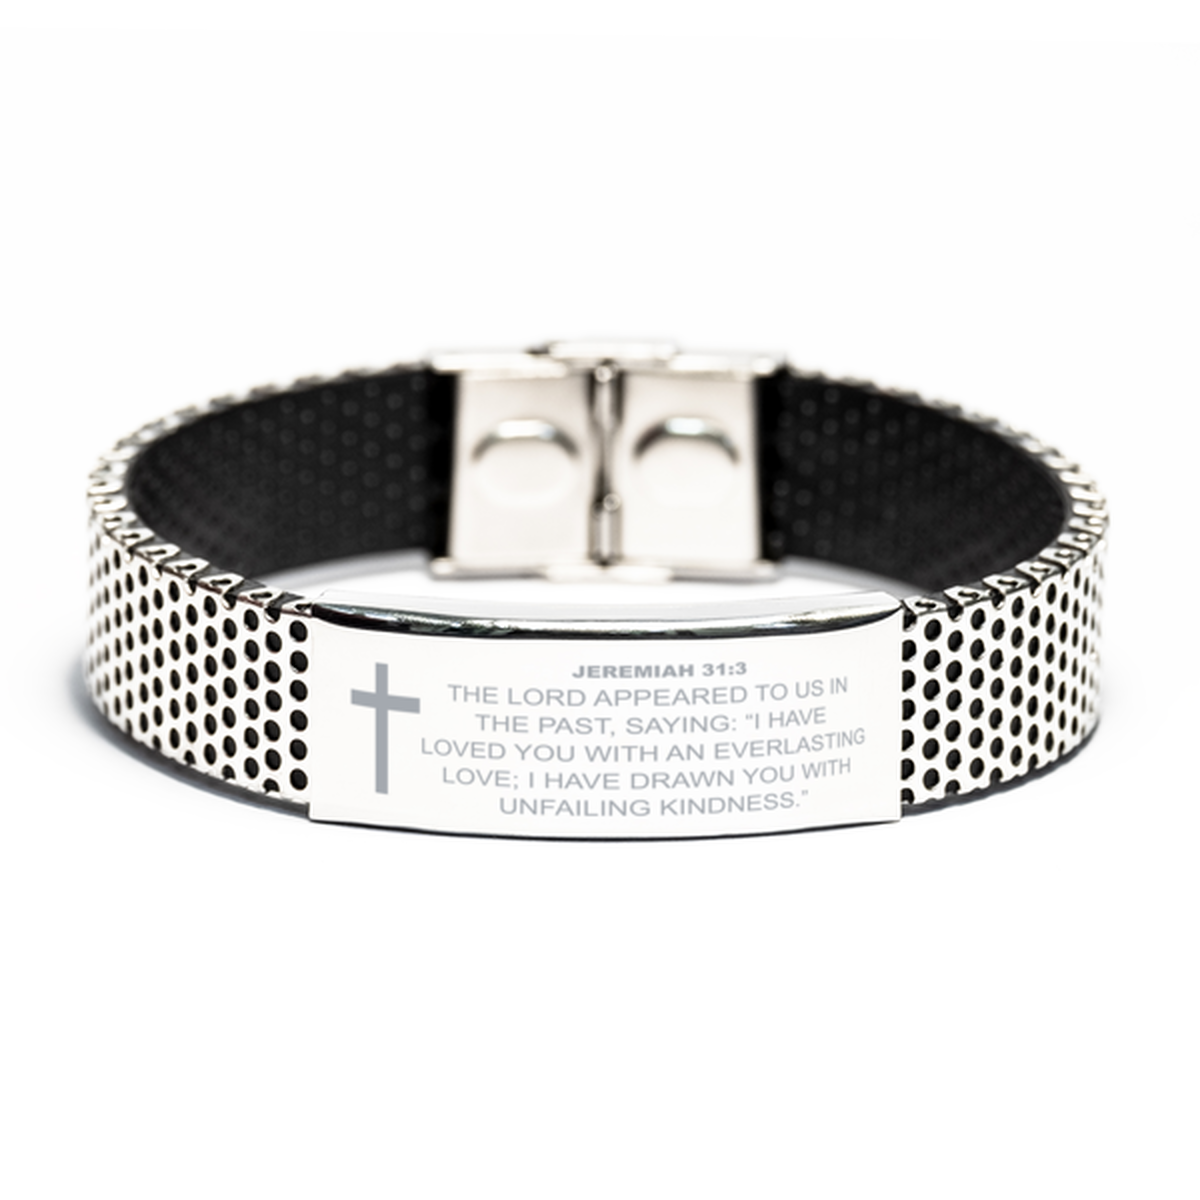 Jeremiah 31 3 Bracelet, Bible Verse Bracelet, Christian Bracelet, Christian Birthday Gift, Stainless Steel Bracelet, Gift for Christian.